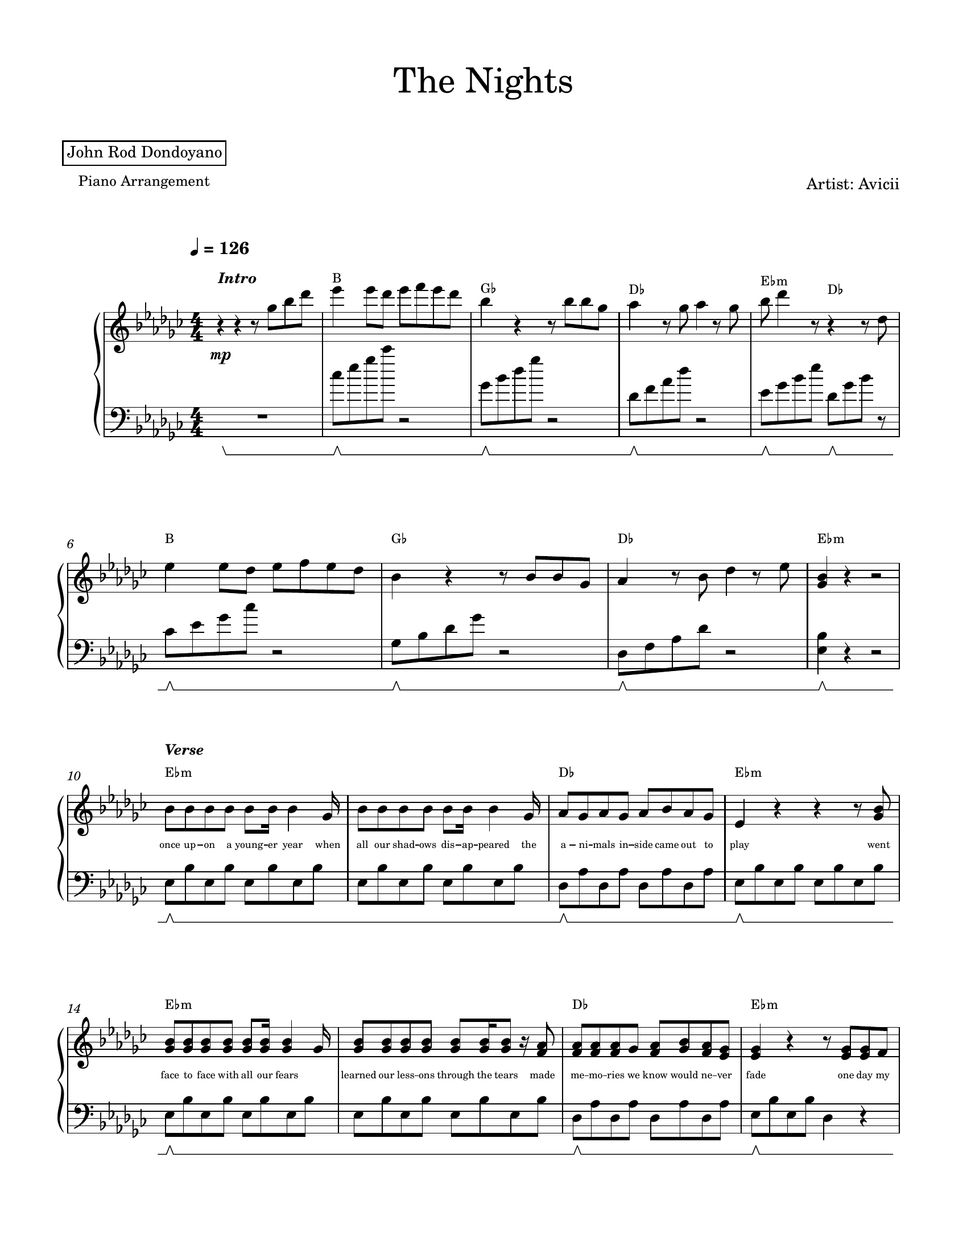 Avicii - The Nights (PIANO SHEET) by John Rod Dondoyano